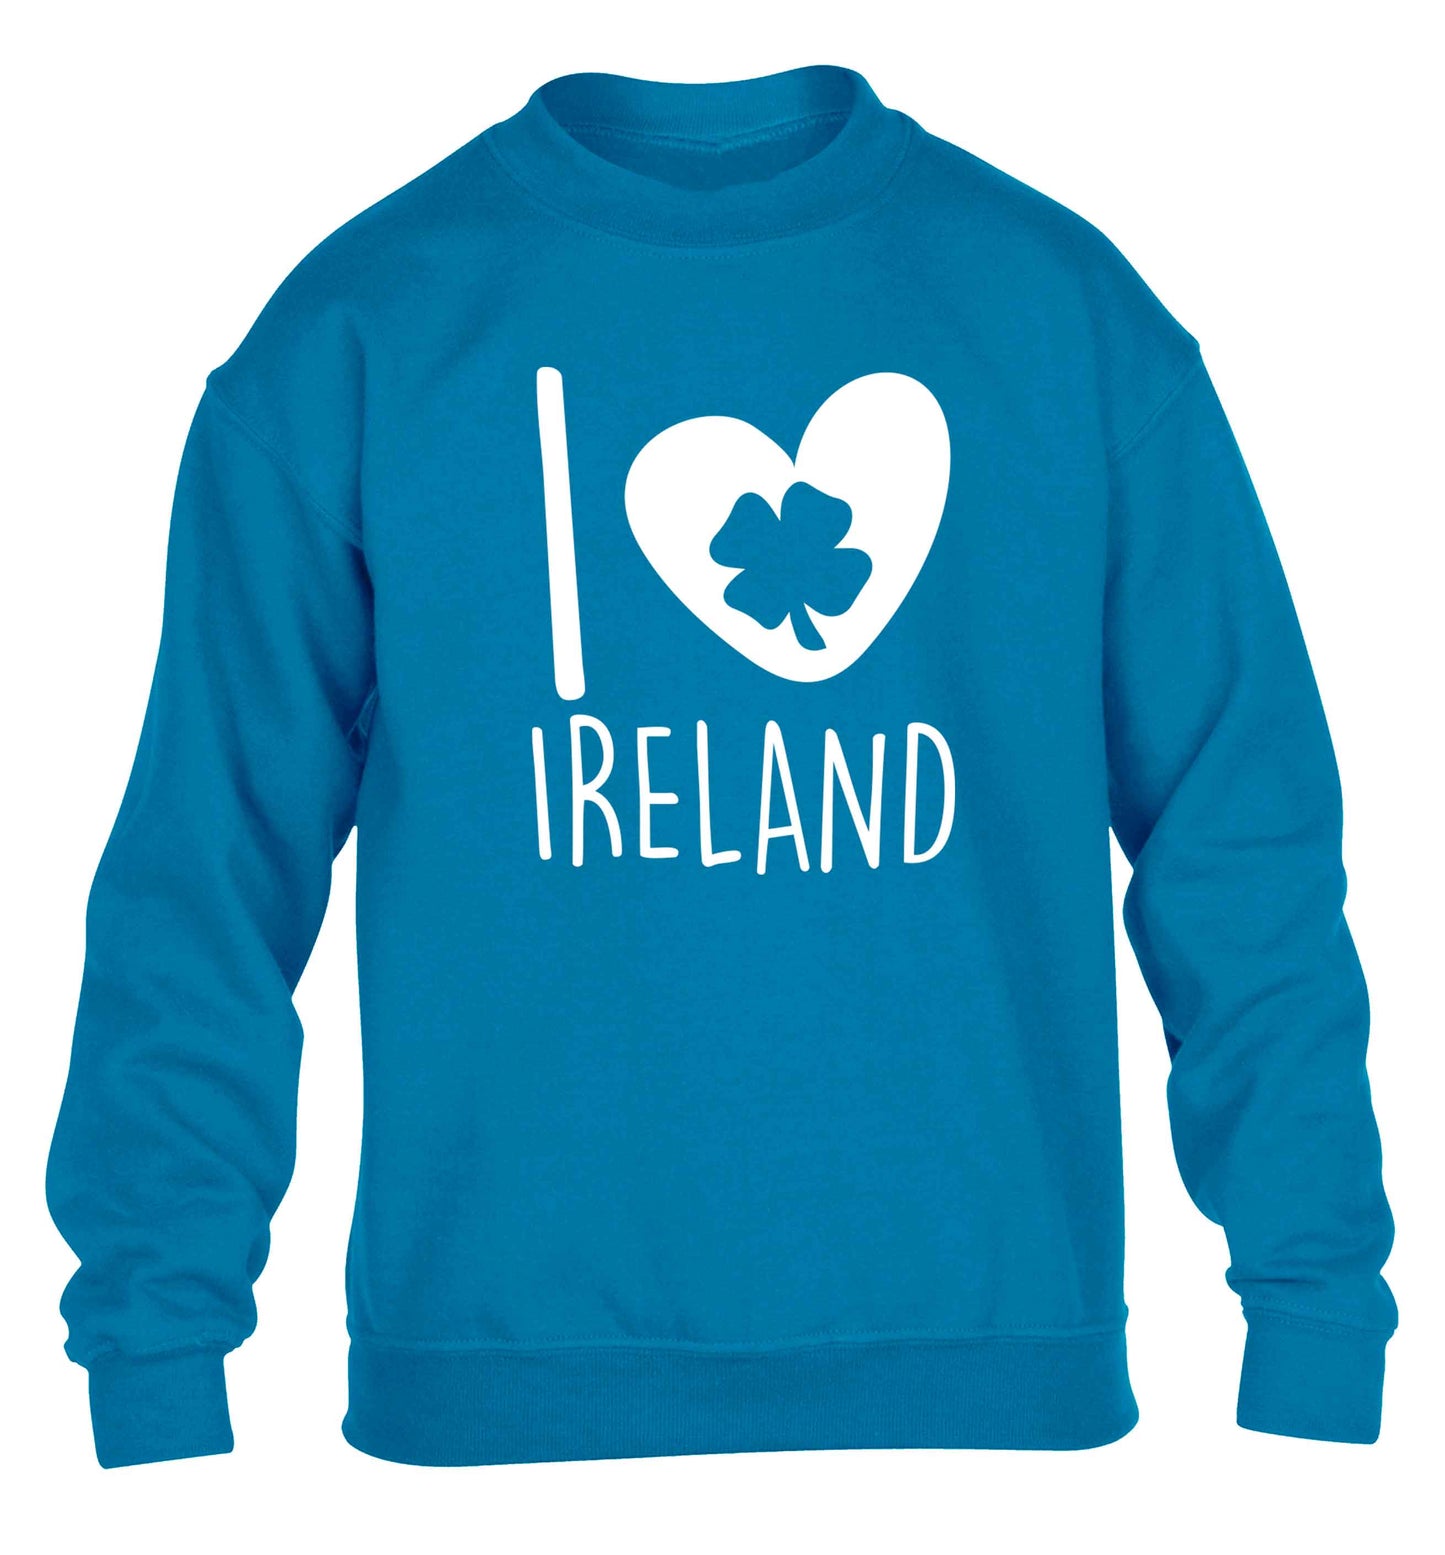 I love Ireland children's blue sweater 12-13 Years